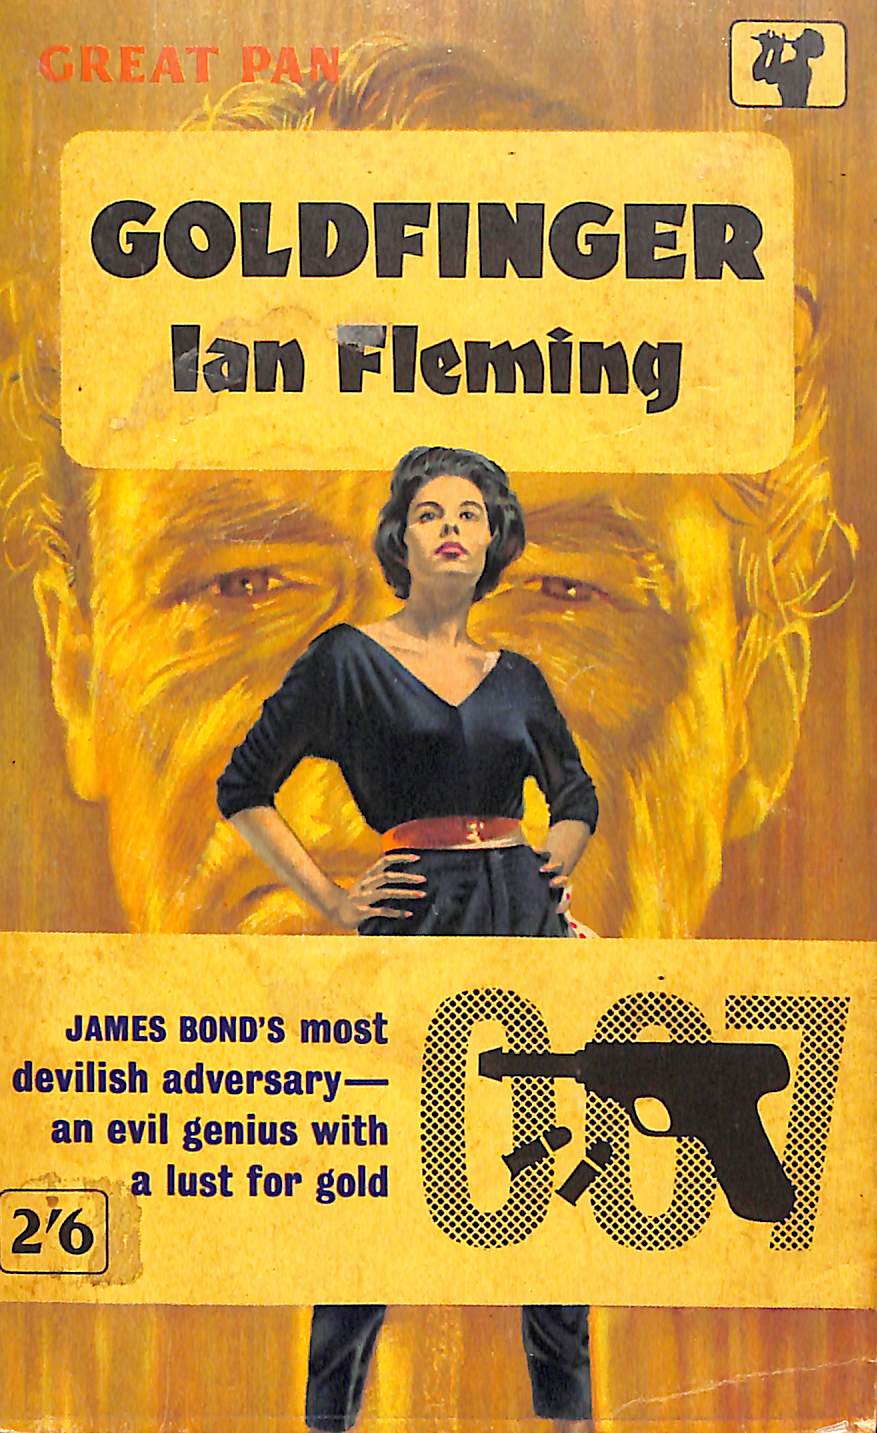 "Goldfinger" 1963 FLEMING, Ian